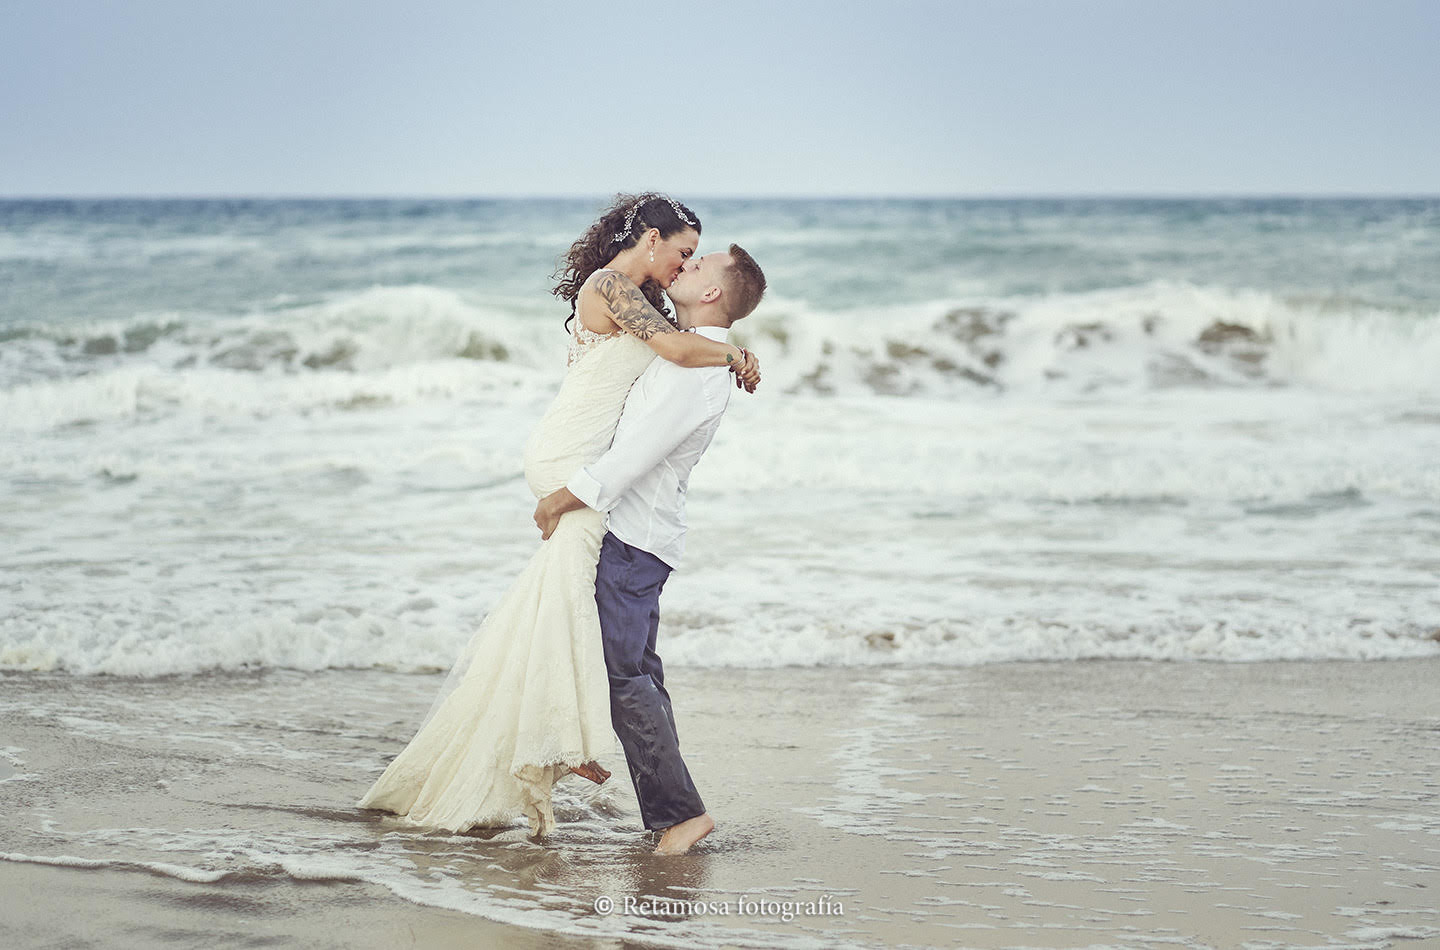 Las mejores fotografías de besos de recién casados